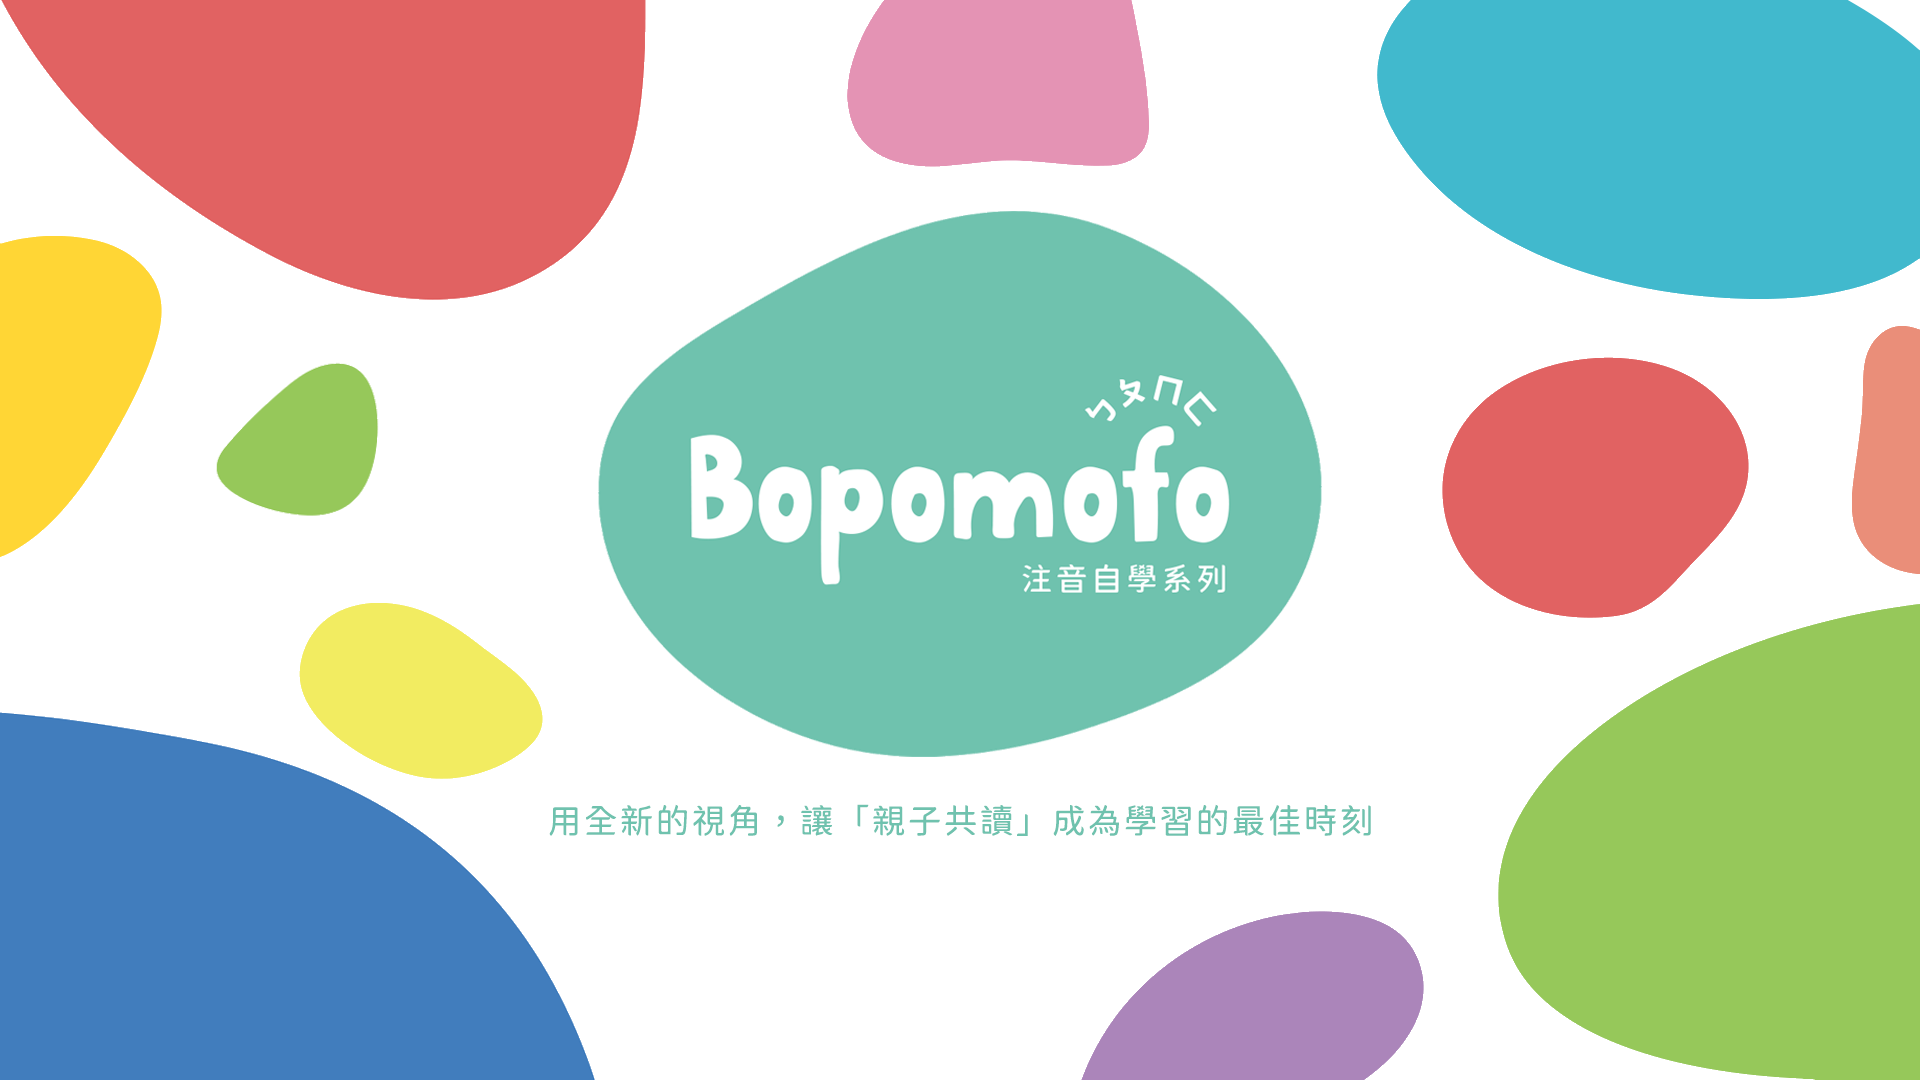 親子共讀，快樂自學 | Bopomofo注音自學系列